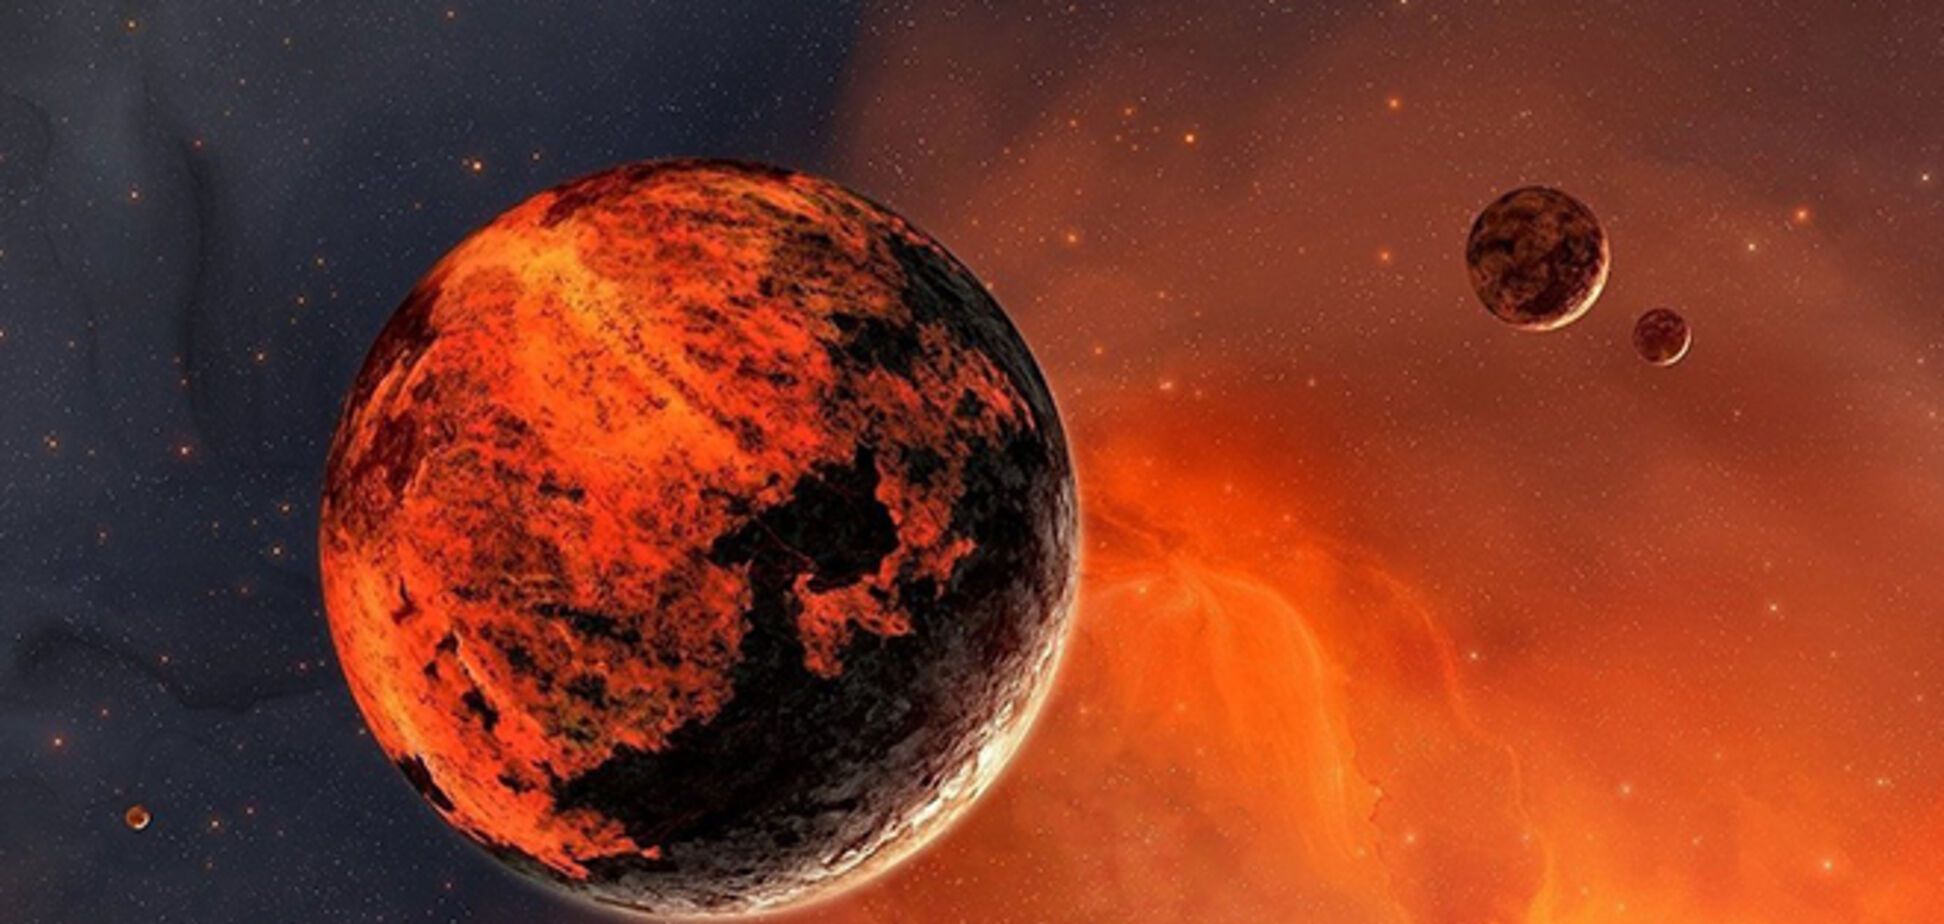  'Великое противостояние': в этом месяце Землю ждет грандиозное космическое явление